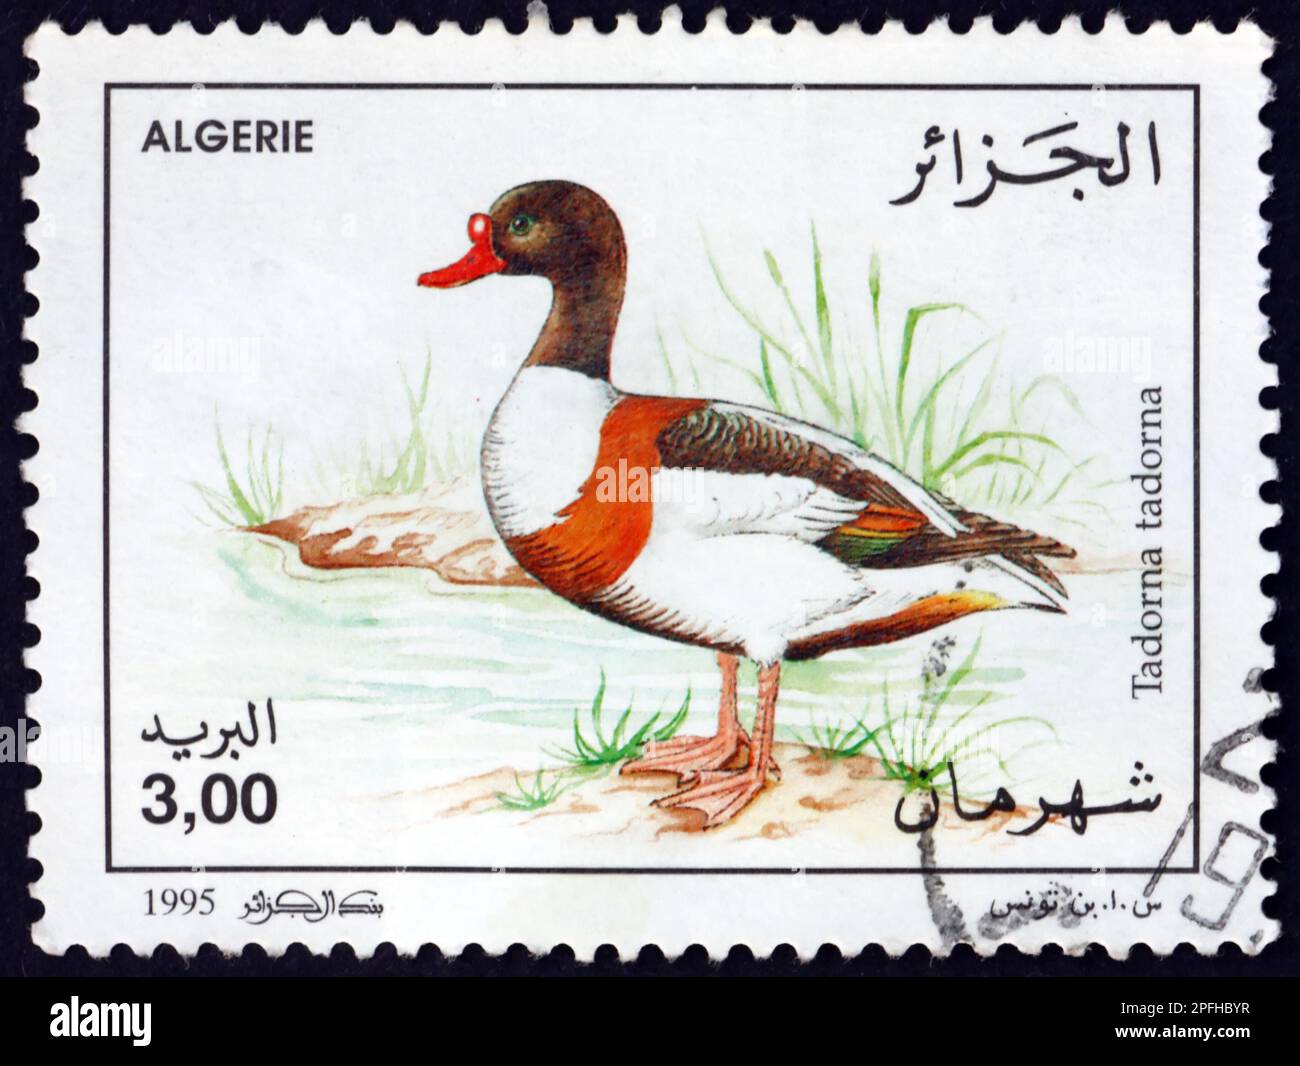 ARGELIA - CIRCA 1995: Un sello impreso en Argelia muestra el shelduck común, tadorna tadorna, ave acuática, circa 1995 Foto de stock